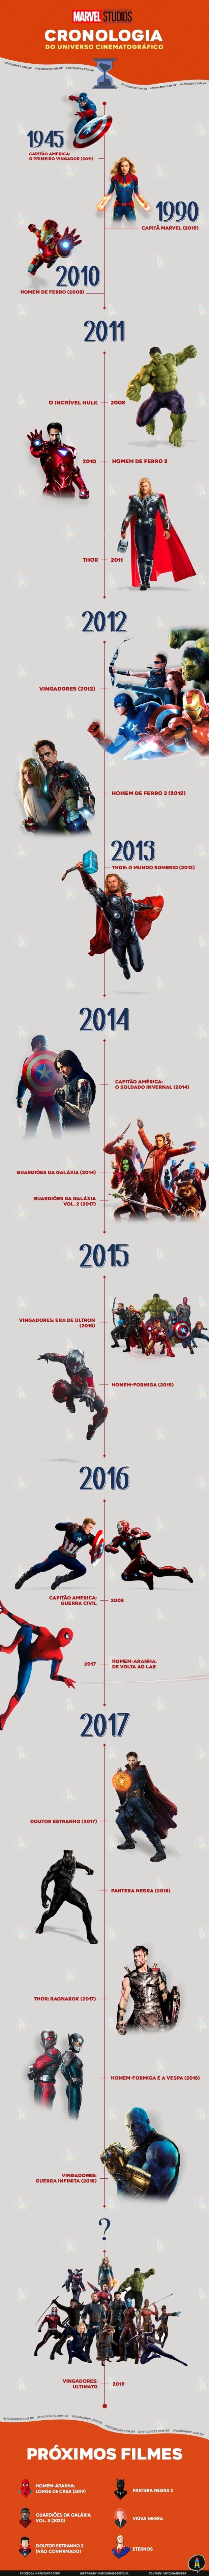 Ordem dos filmes da Marvel até Vingadores: Ultimato